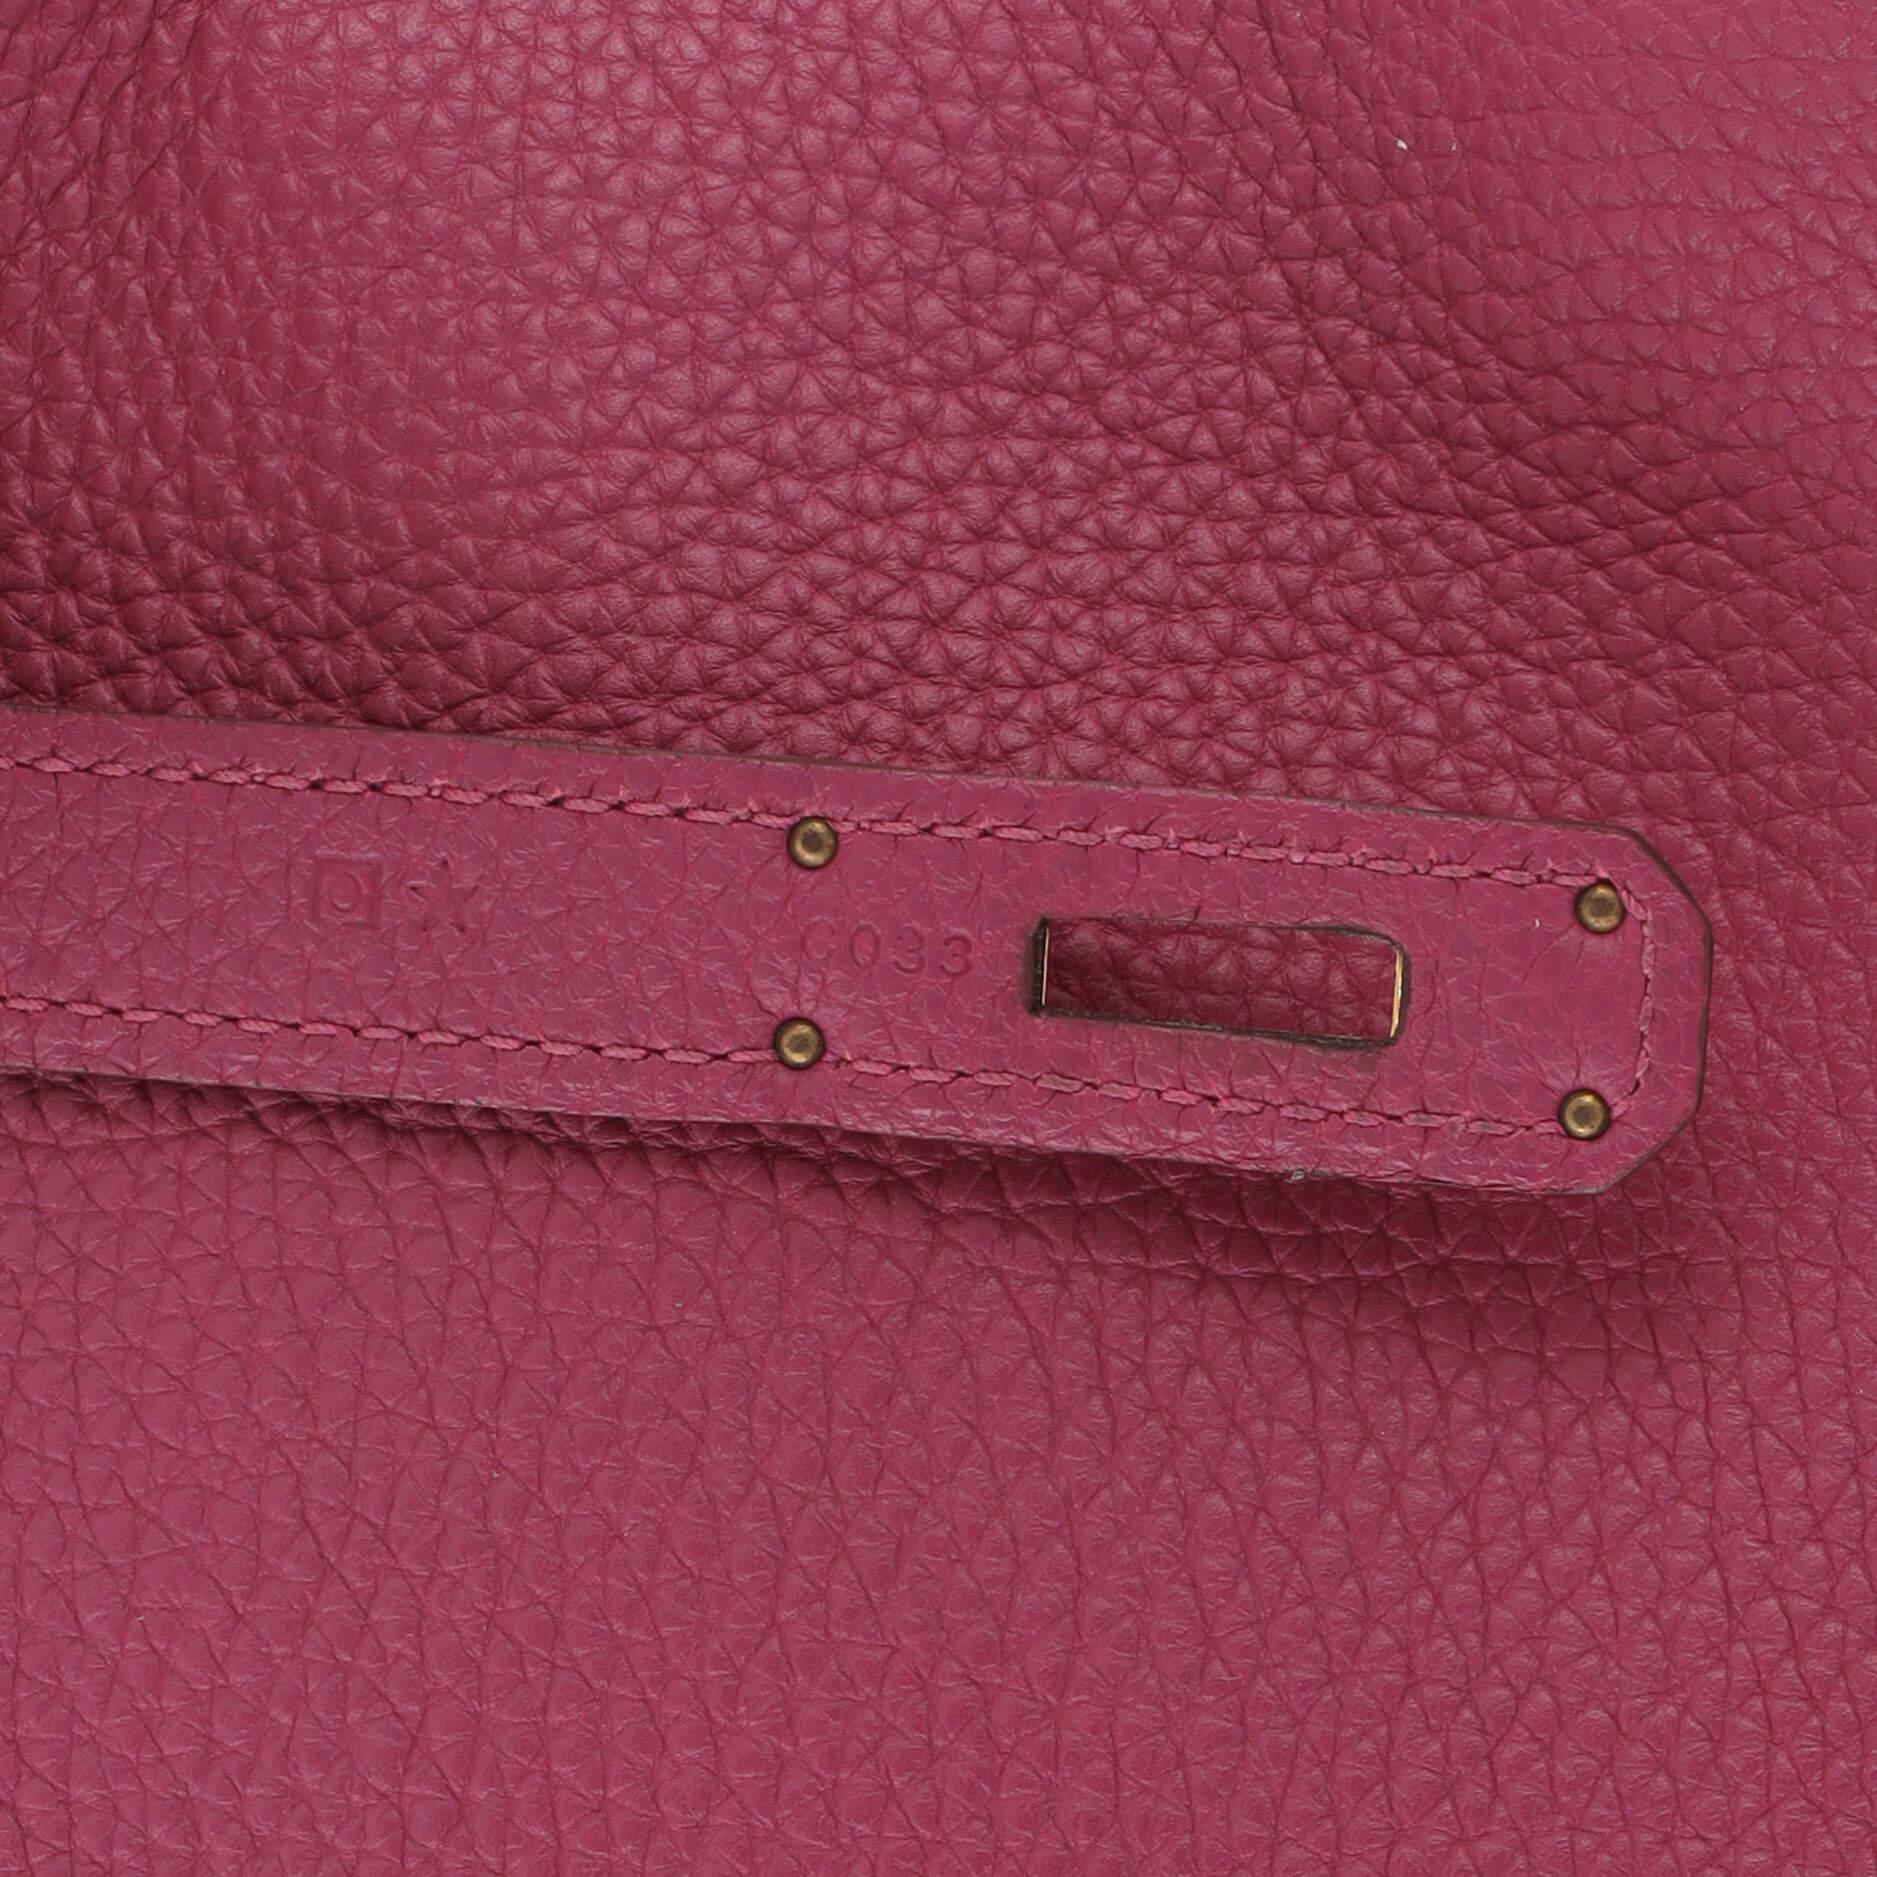 Hermes Kelly Handbag Tosca Togo With Gold Hardware 35 For Sale 8